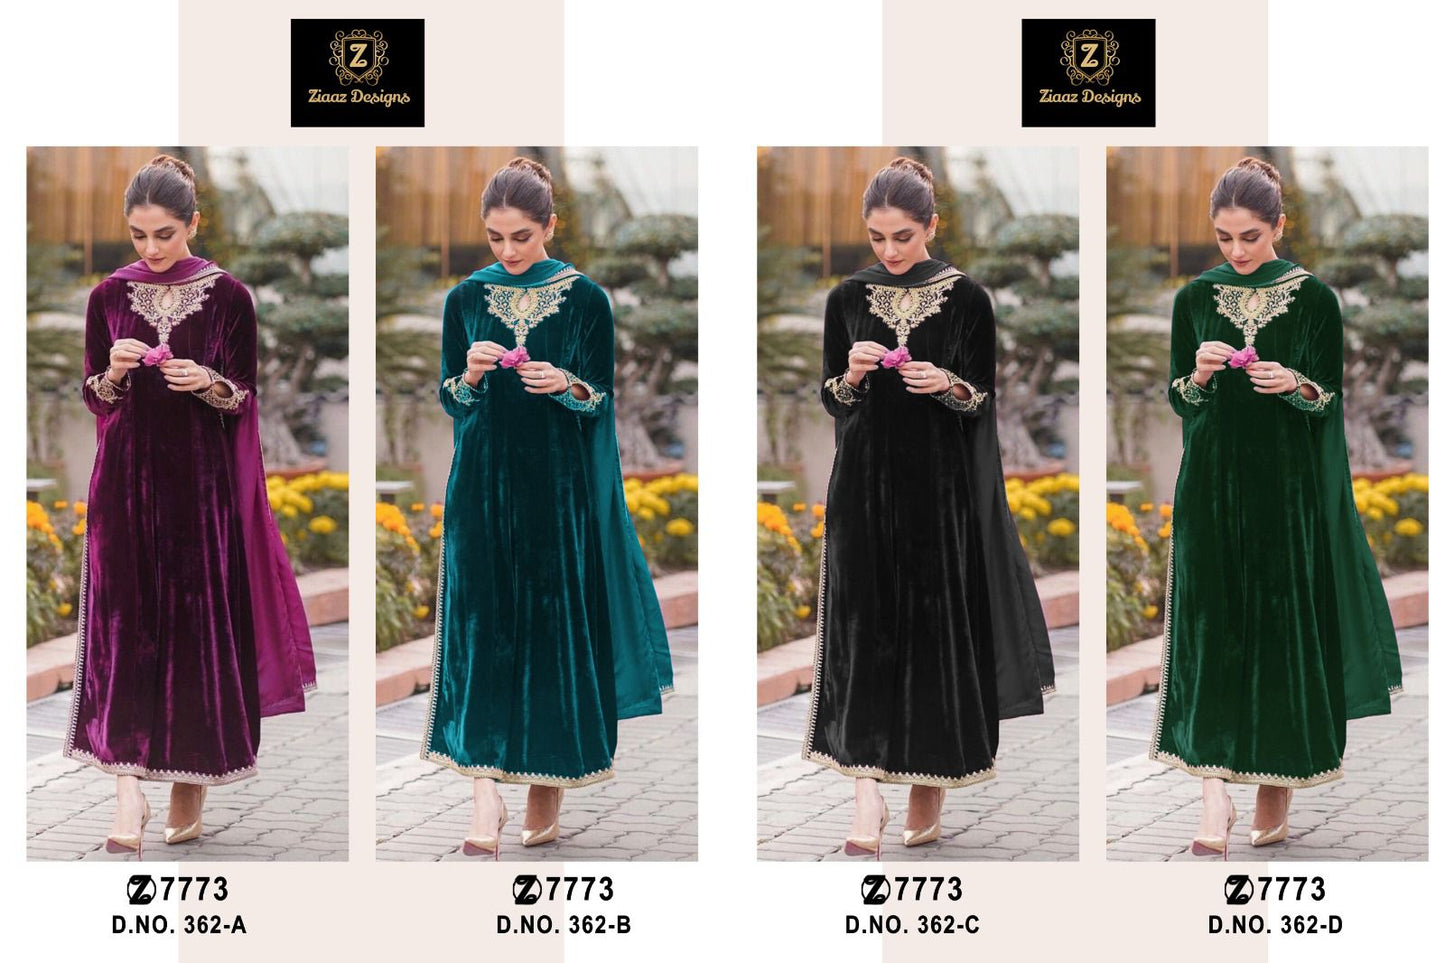 D. No 362 Ziaaz Designs Velvet Suits